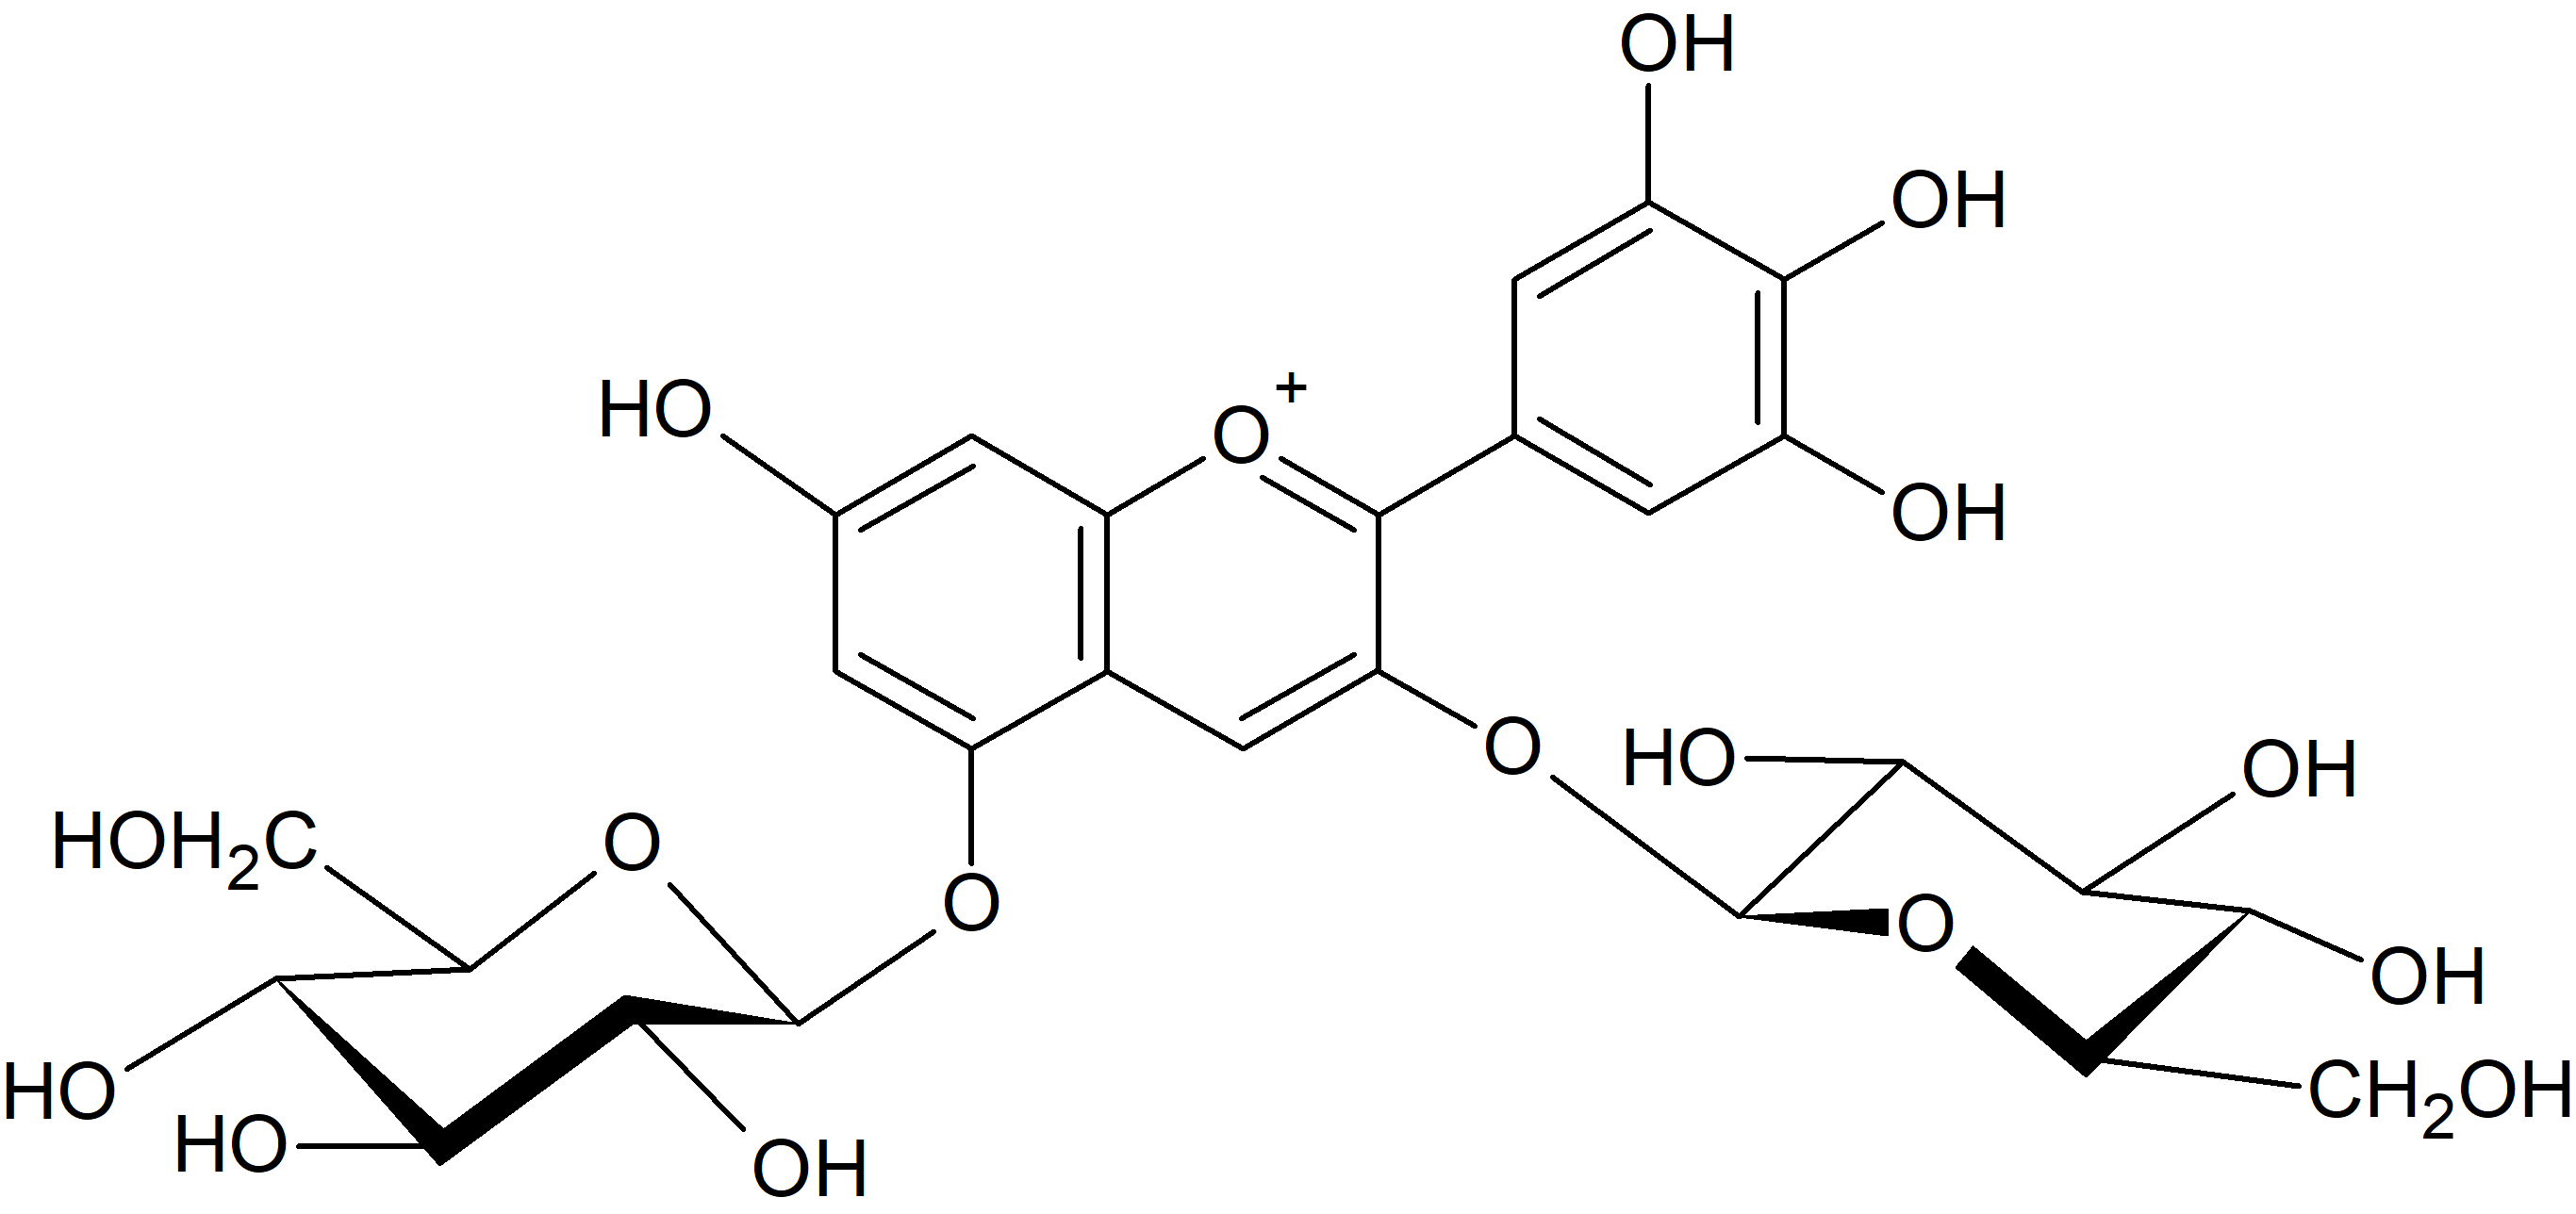 Delphinidin 3,5-di-O-glucoside